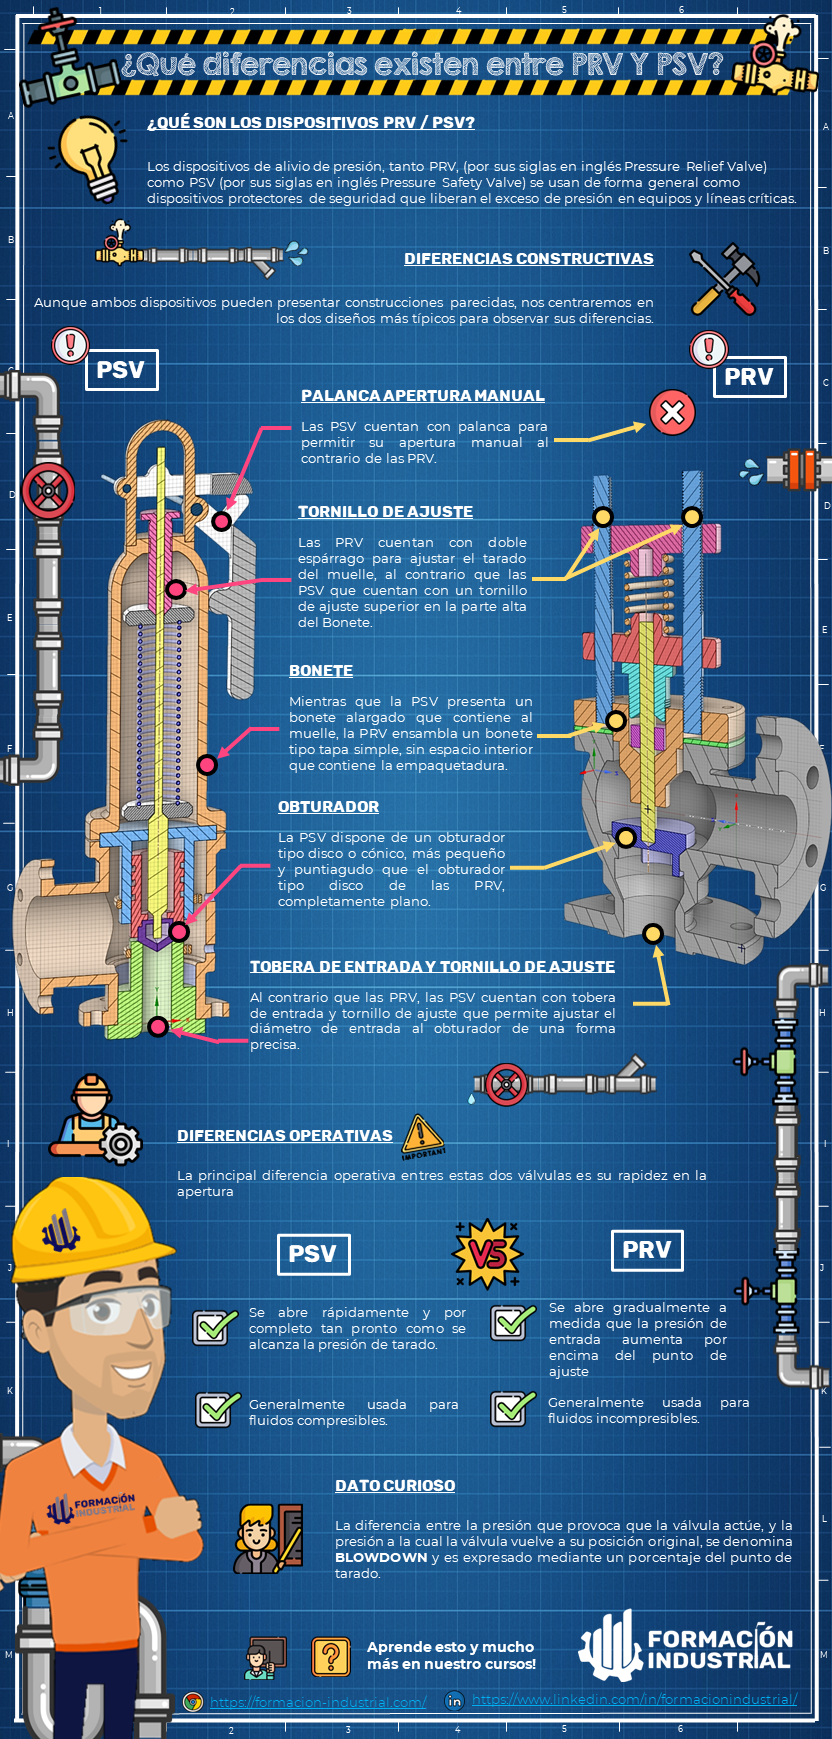 Infografía comparativa de PRV y PSV en sistemas de control de presión